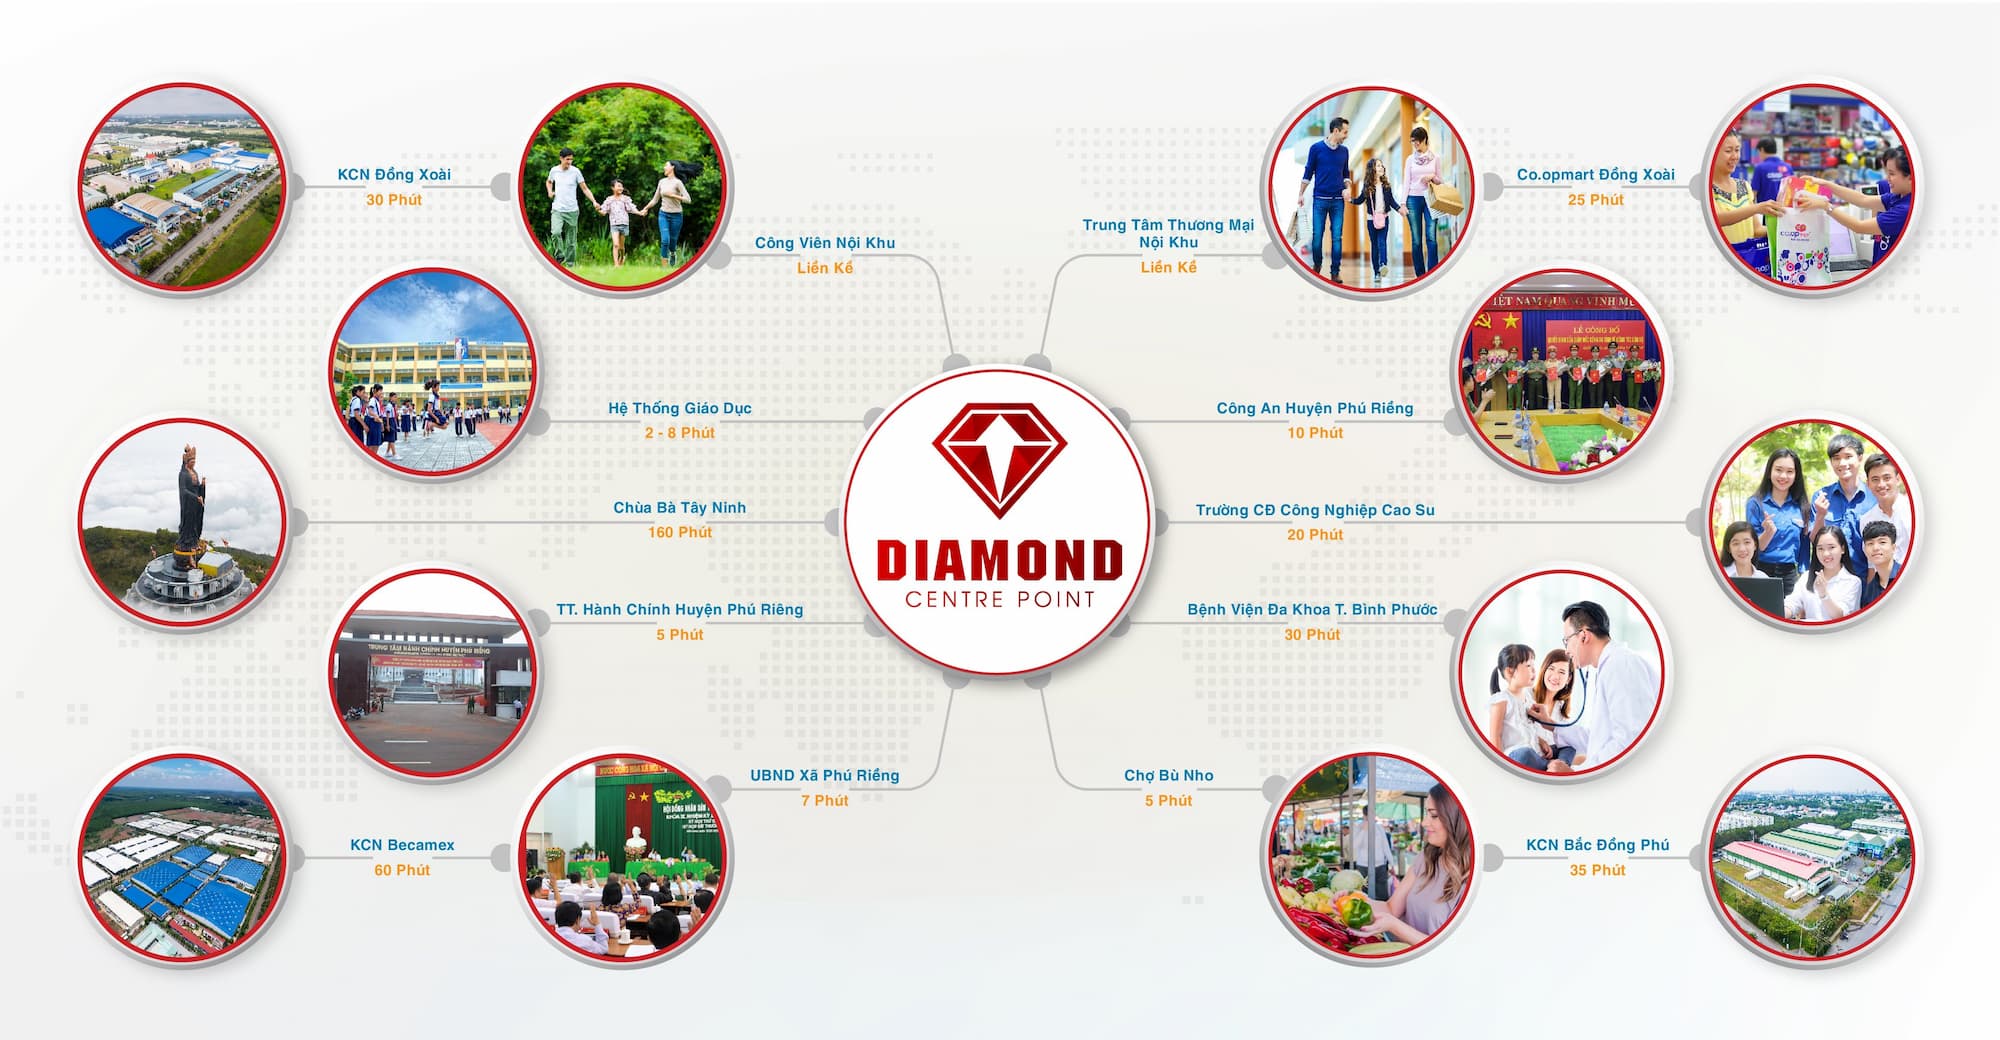 Tiện ích ngoại khu dự án Diamond centre point Bình Phước